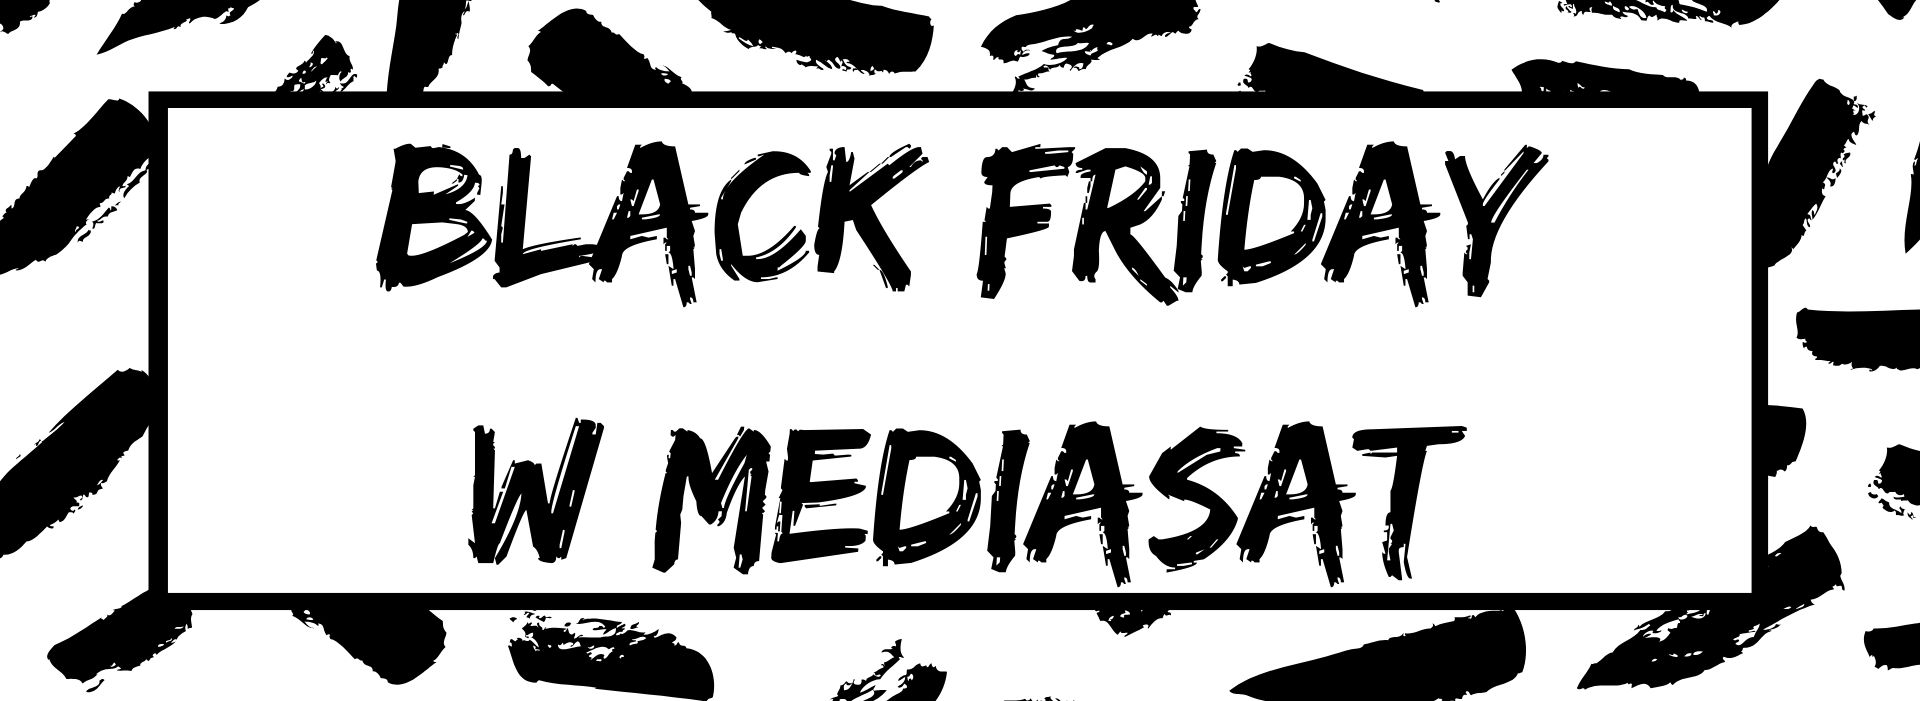 Black Friday w Mediasat - zapowiedź